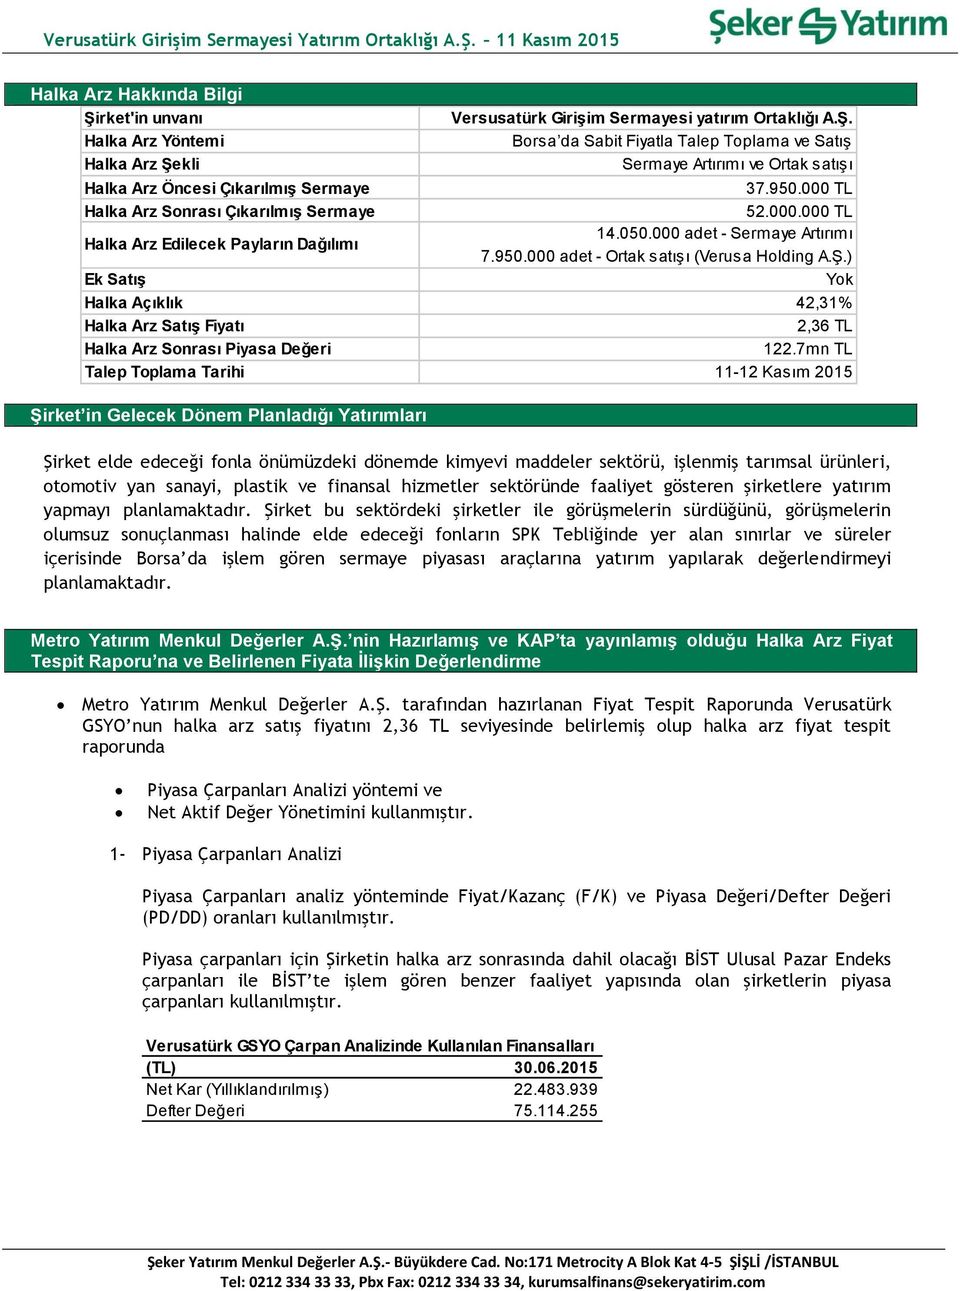 050.000 adet - Sermaye Artırımı 7.950.000 adet - Ortak satışı (Verusa Holding A.Ş.) Yok Halka Açıklık 42,31% Halka Arz Satış Fiyatı 2,36 TL Halka Arz Sonrası 122.